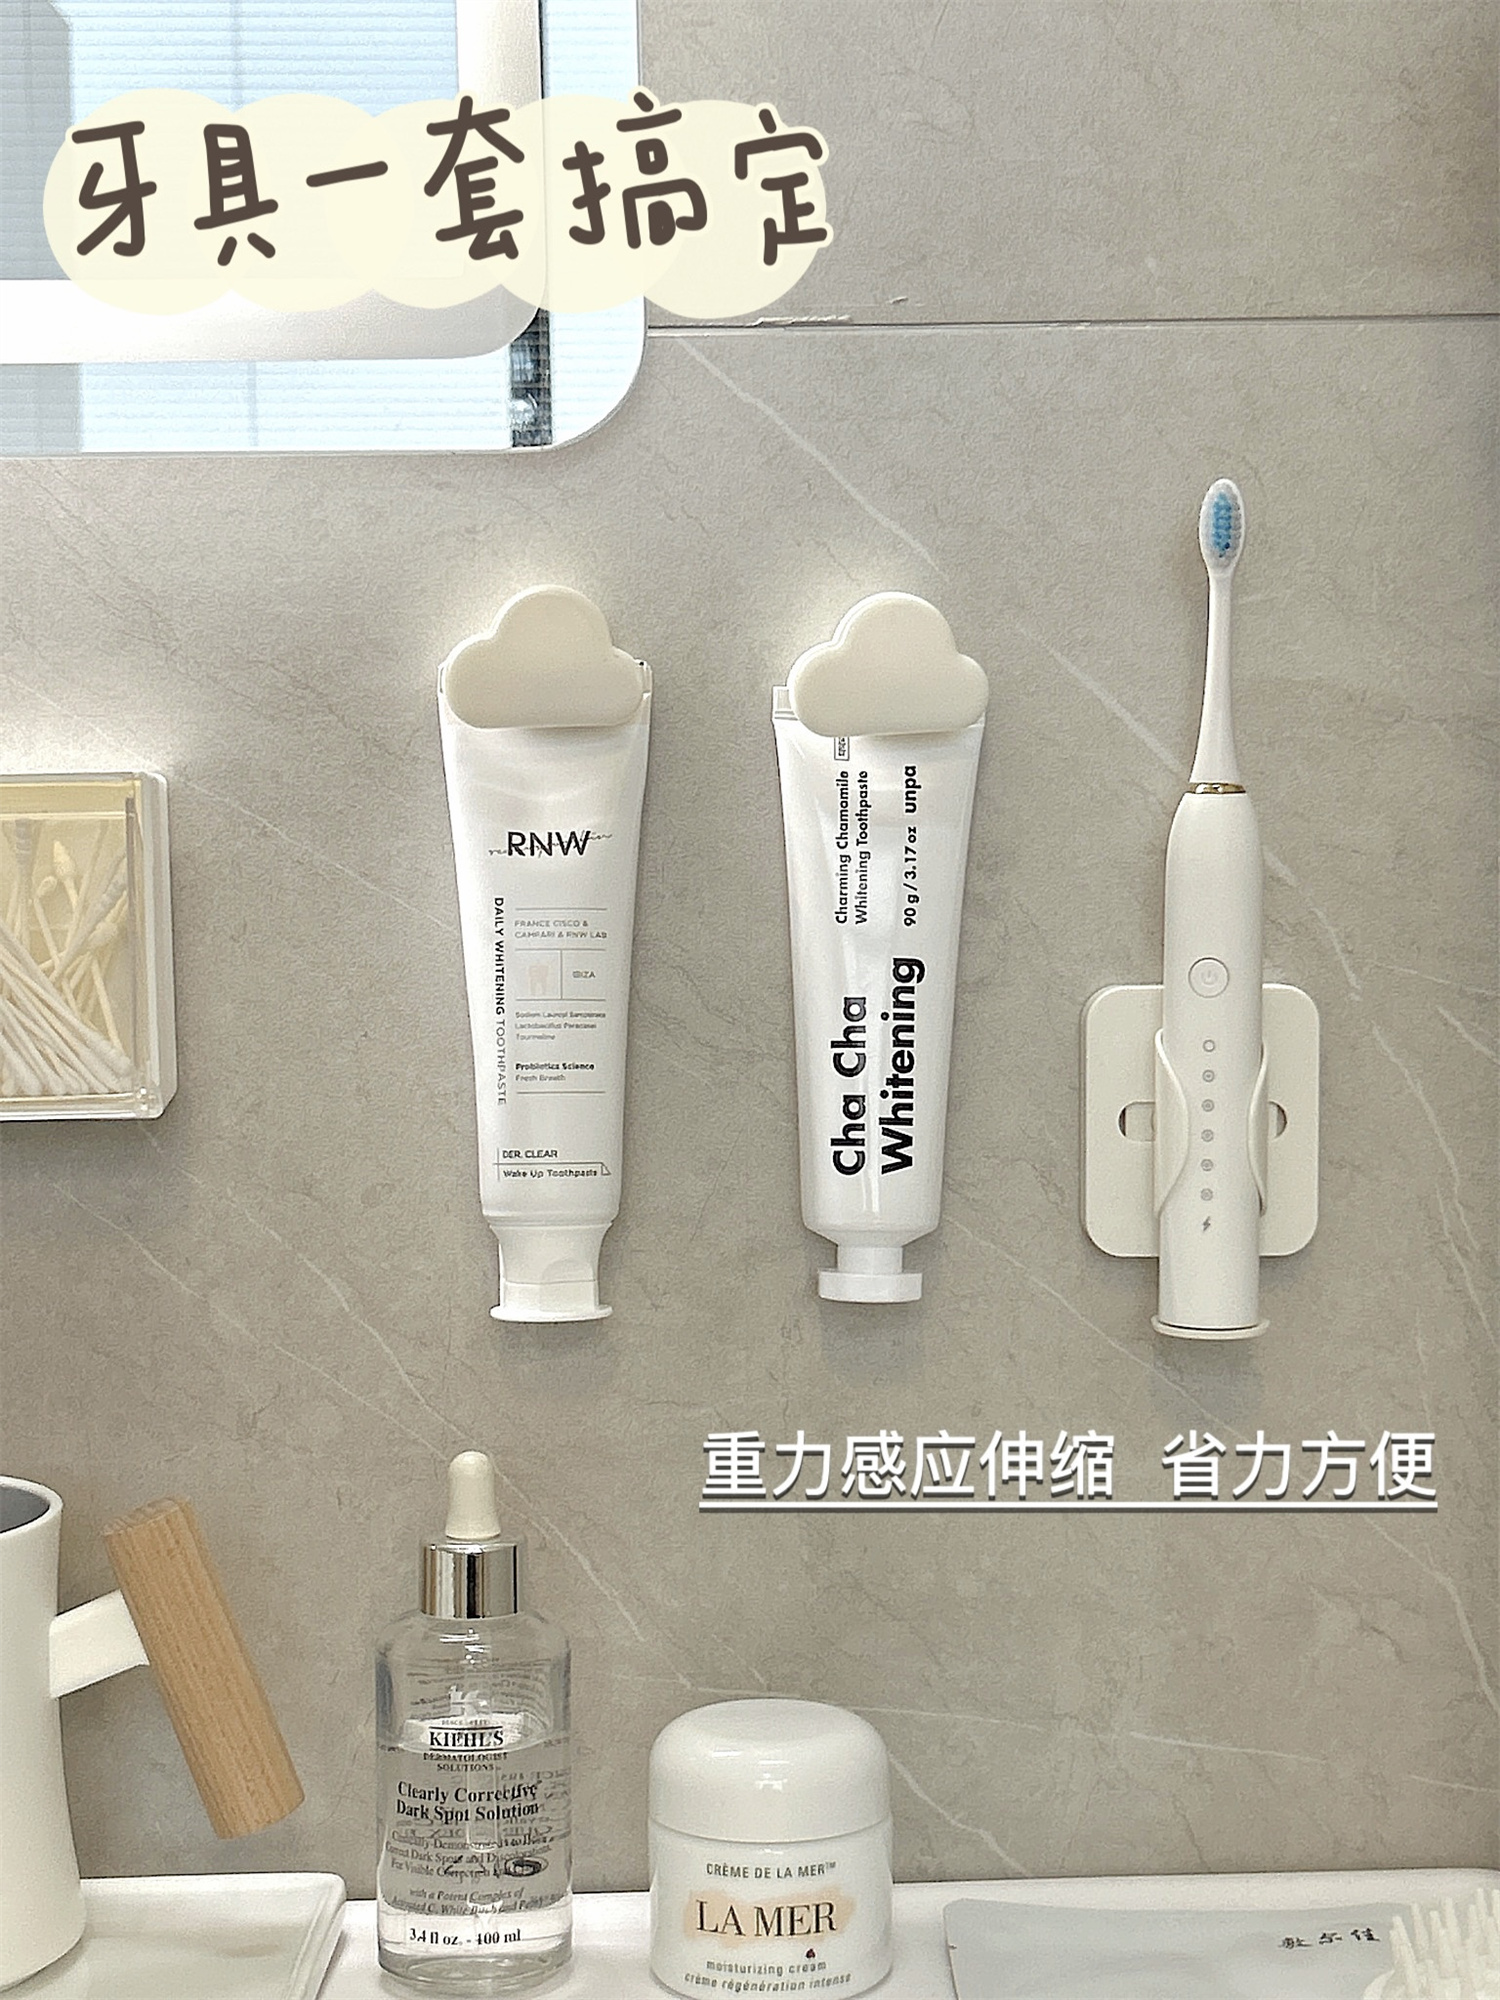 新疆包邮区电动牙刷架卫生间免打孔壁挂支架浴室自动收纳挂架牙膏